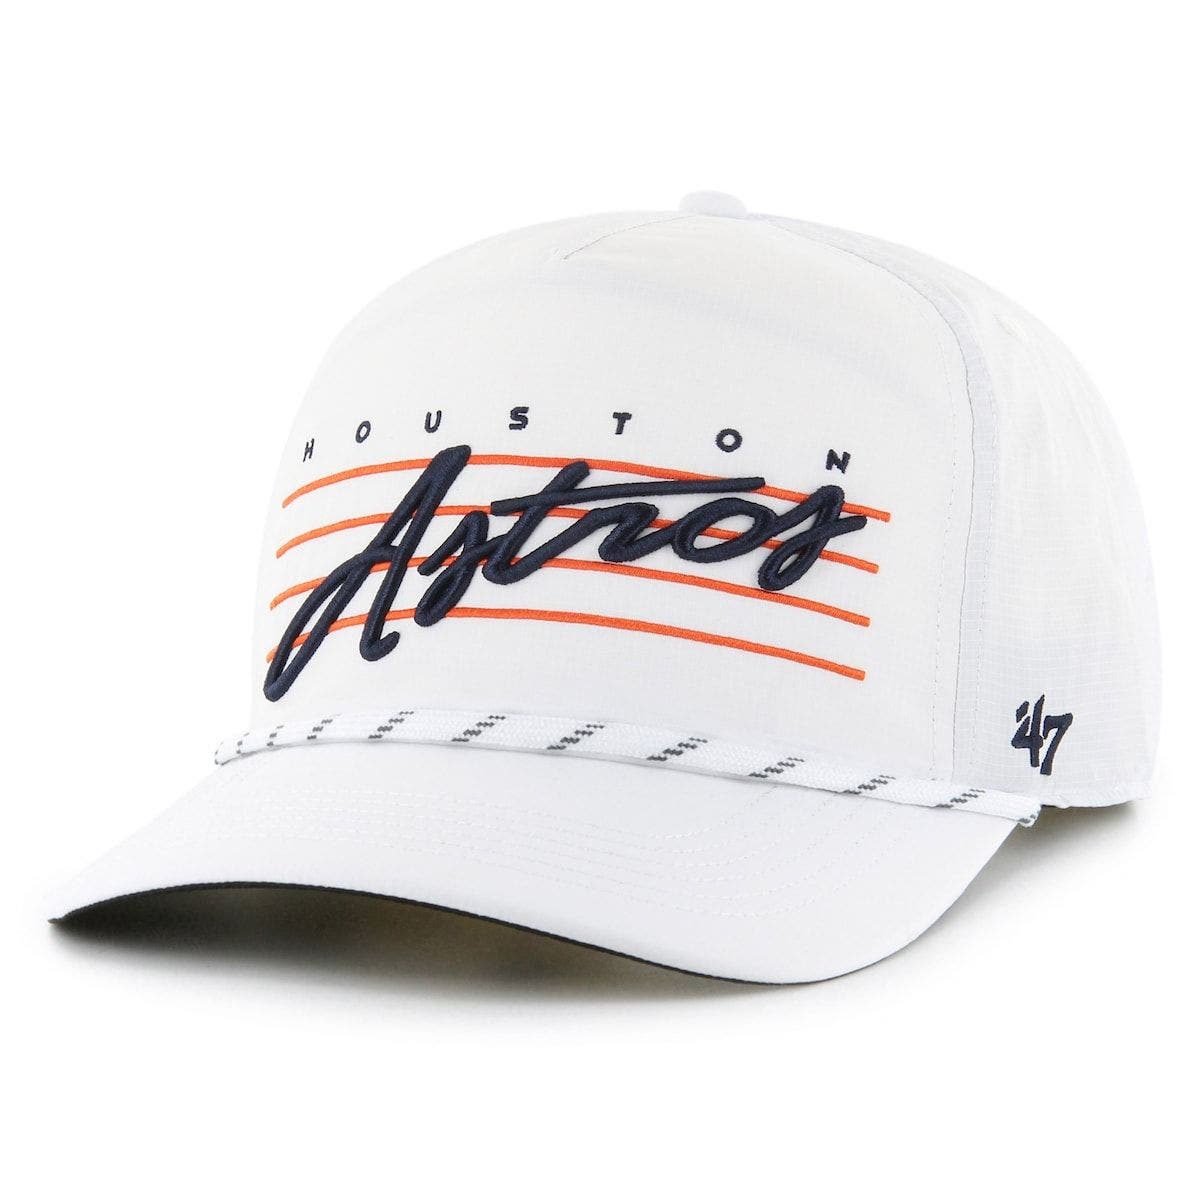 47 Men's Houston Astros MVP Navy Adjustable Hat